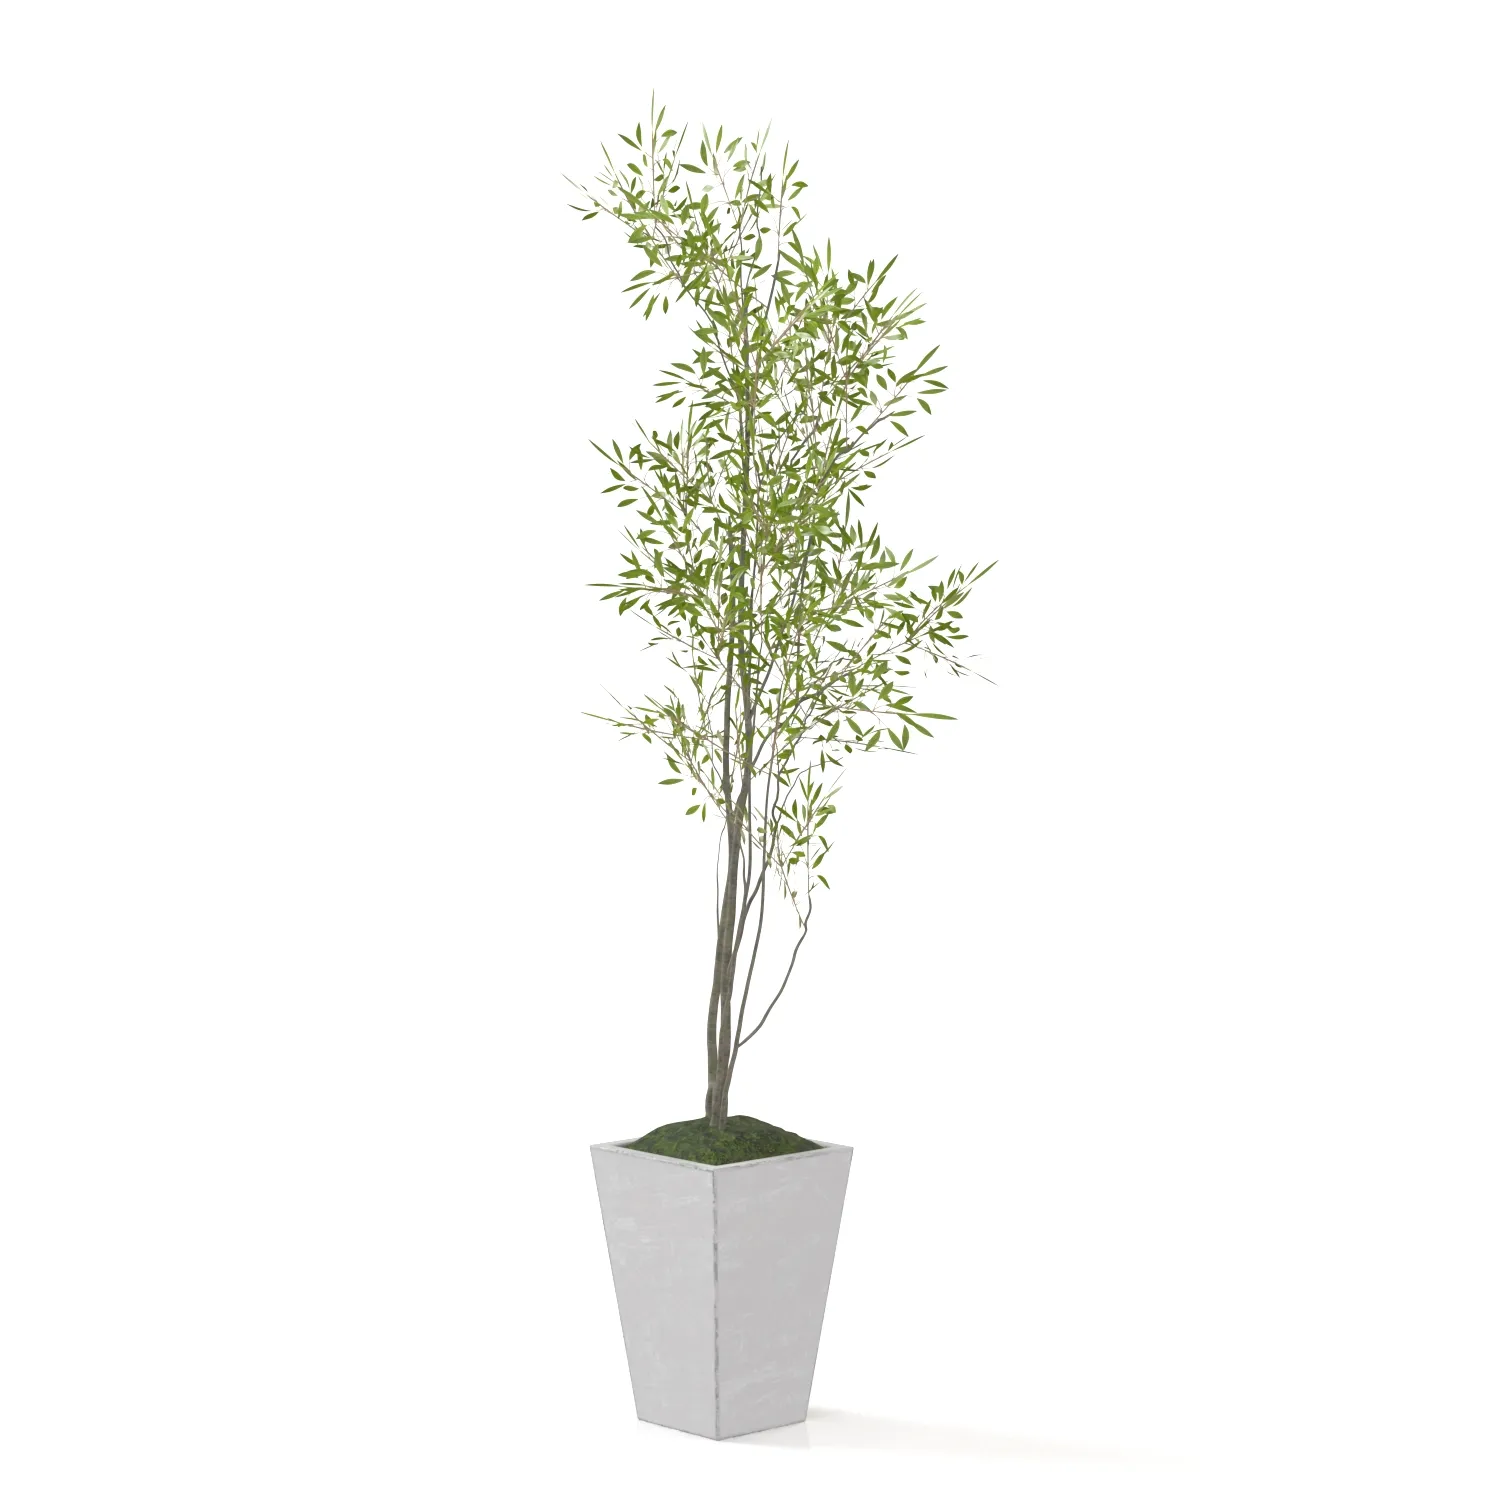 Amur Decorative Plant PBR 3D Model_03